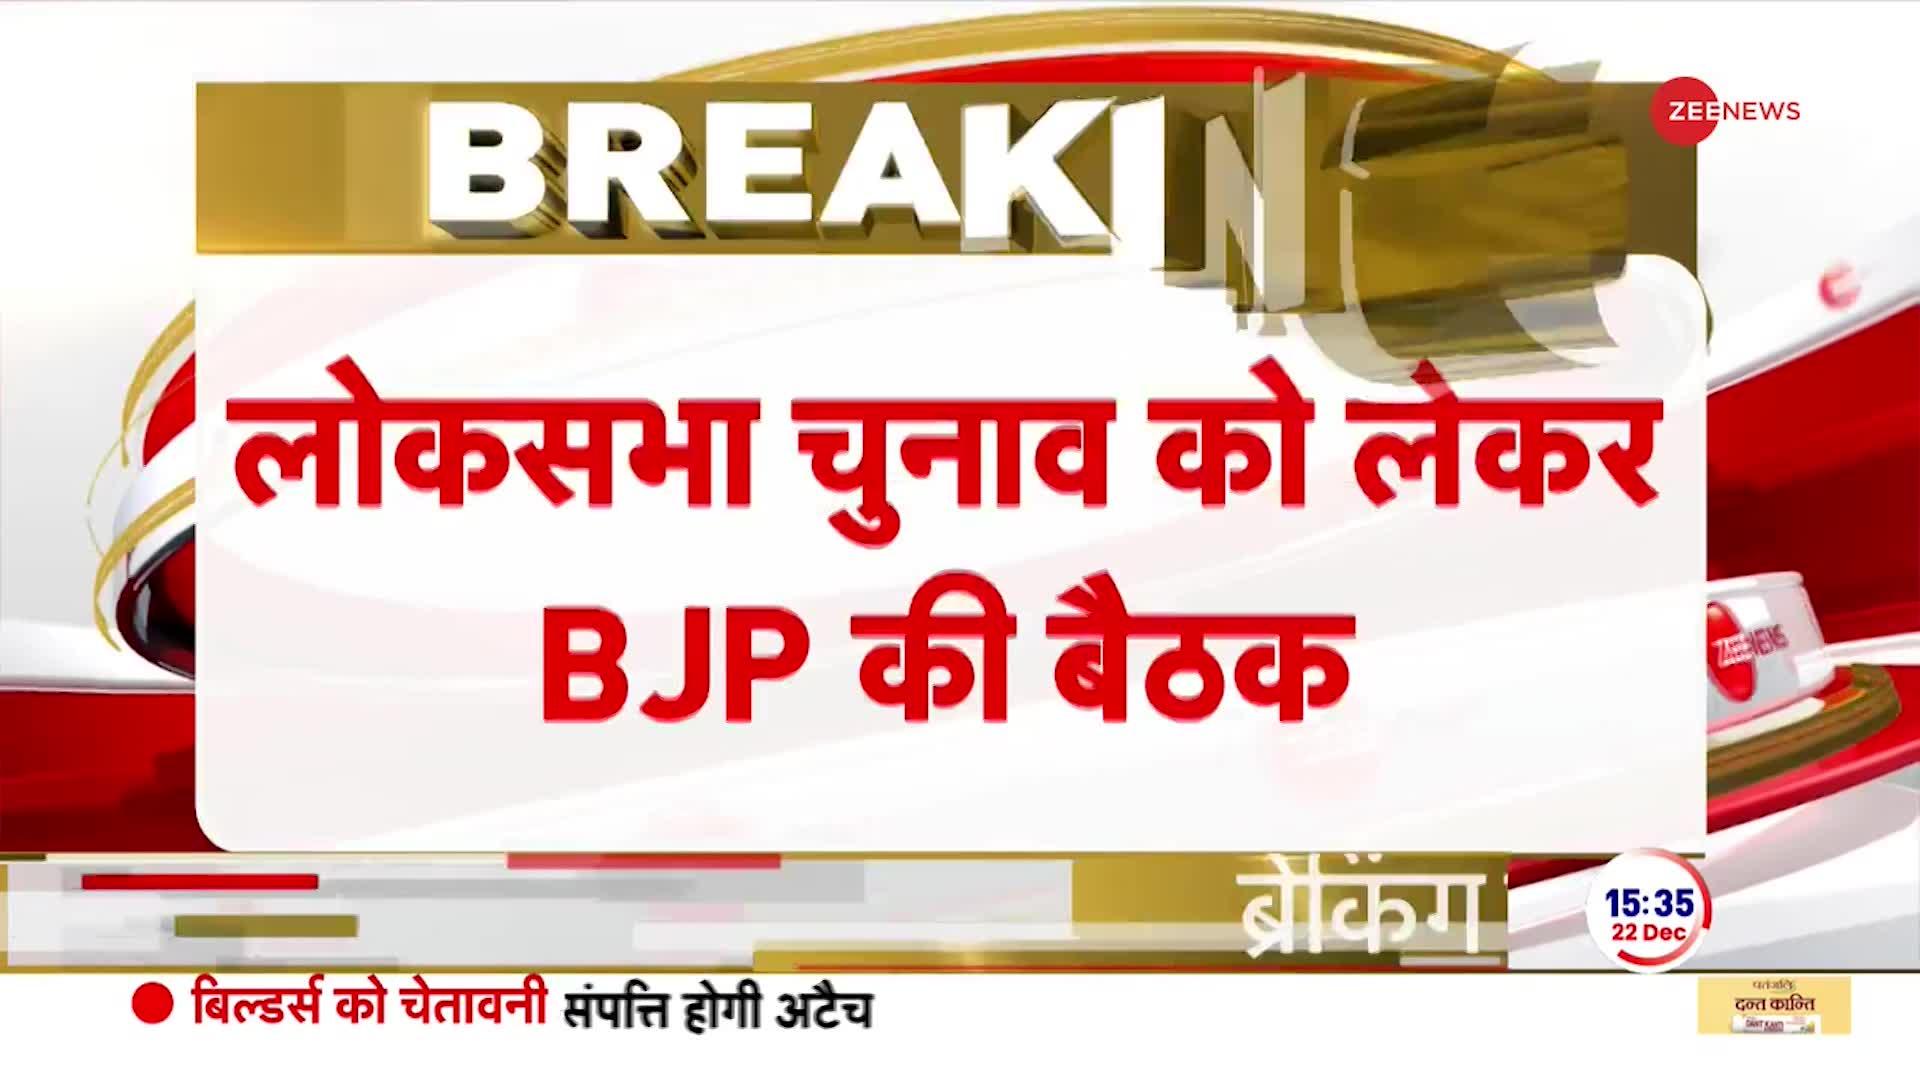 BJP Meeting: लोकसभा चुनाव पर मंथन को लेकर बीजेपी की बड़ी बैठक